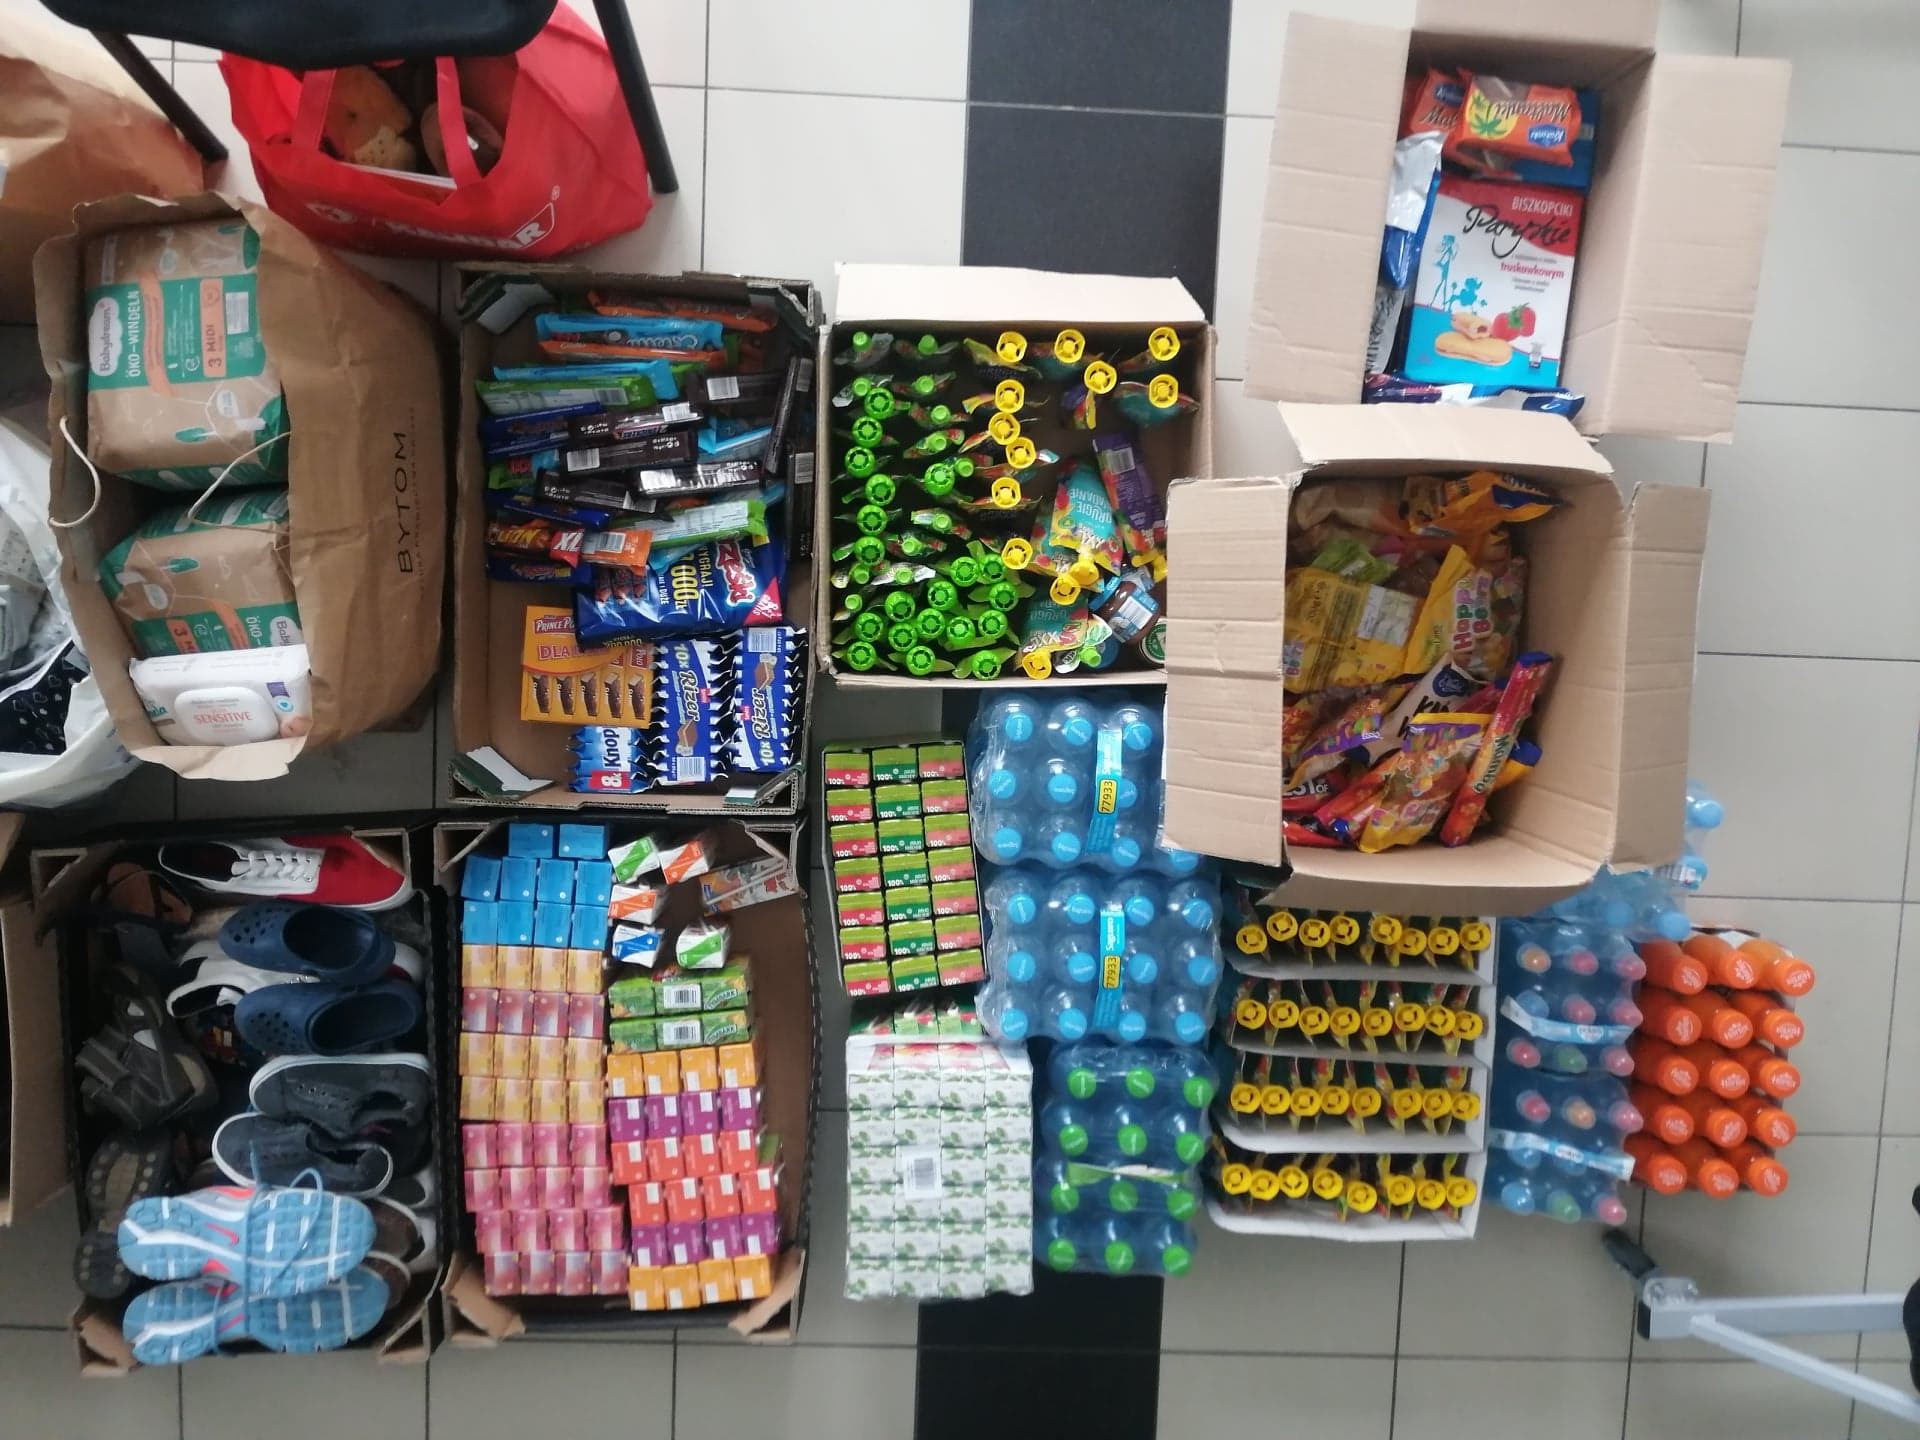 W tym tygodniu Samorząd Szkolny zorganizował zbiórkę najpotrzebniejszych rzeczy i sprzedaż śniadań (dochód został przeznaczony na zakupy) dla Uchodźców z Ukrainy.
Dziękujemy Wam za okazane serca!